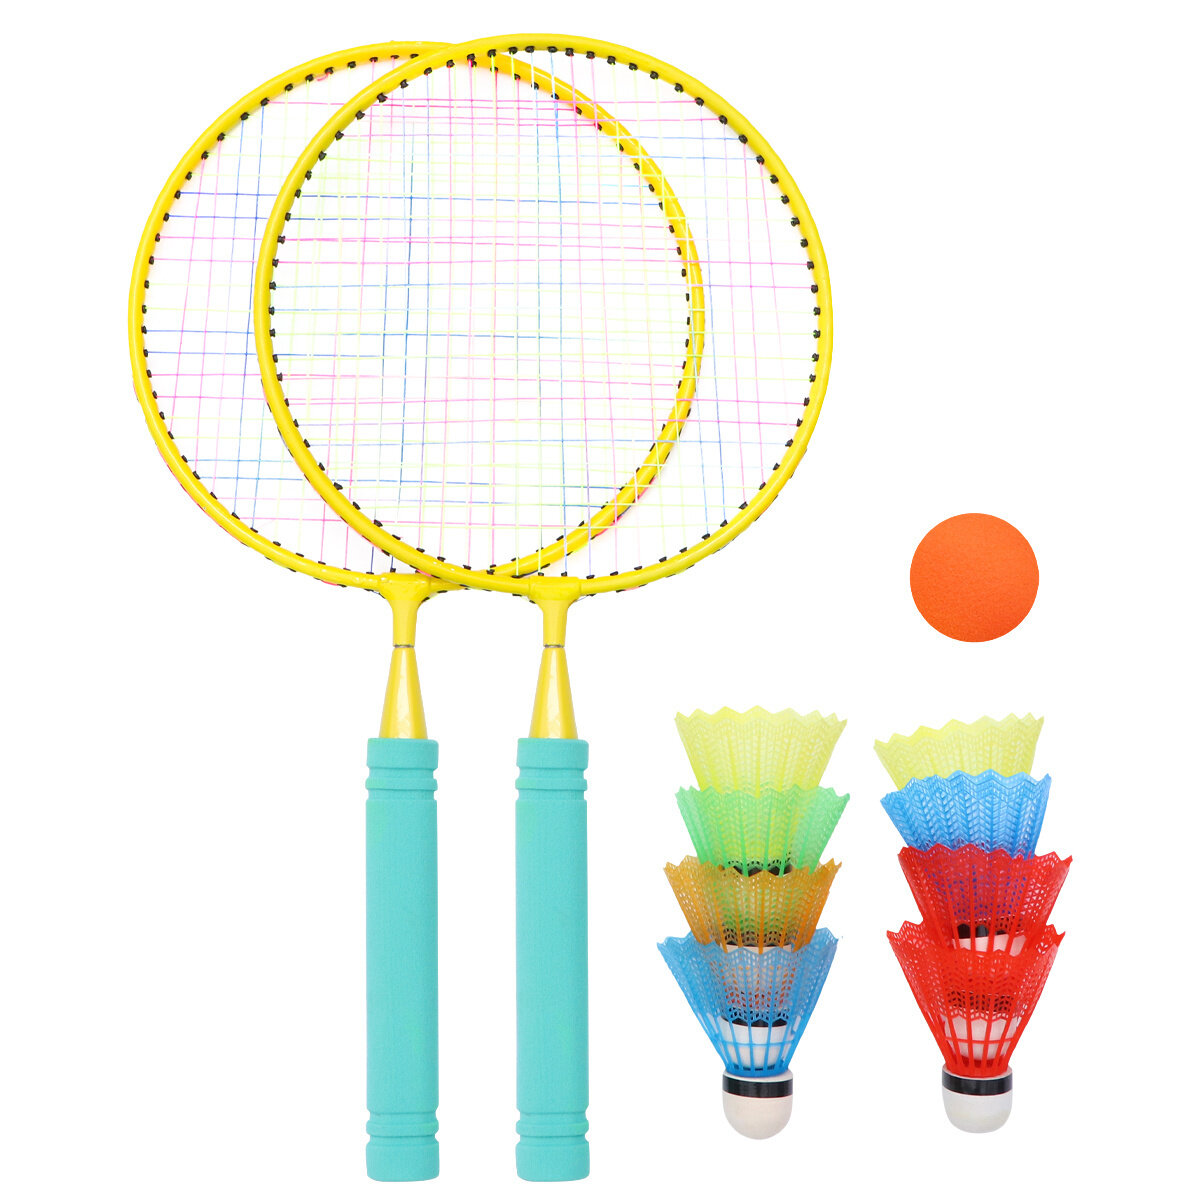 Badminton Racket & Shuttlecock Set Pro Raquet Adults Children Kit Game Garden